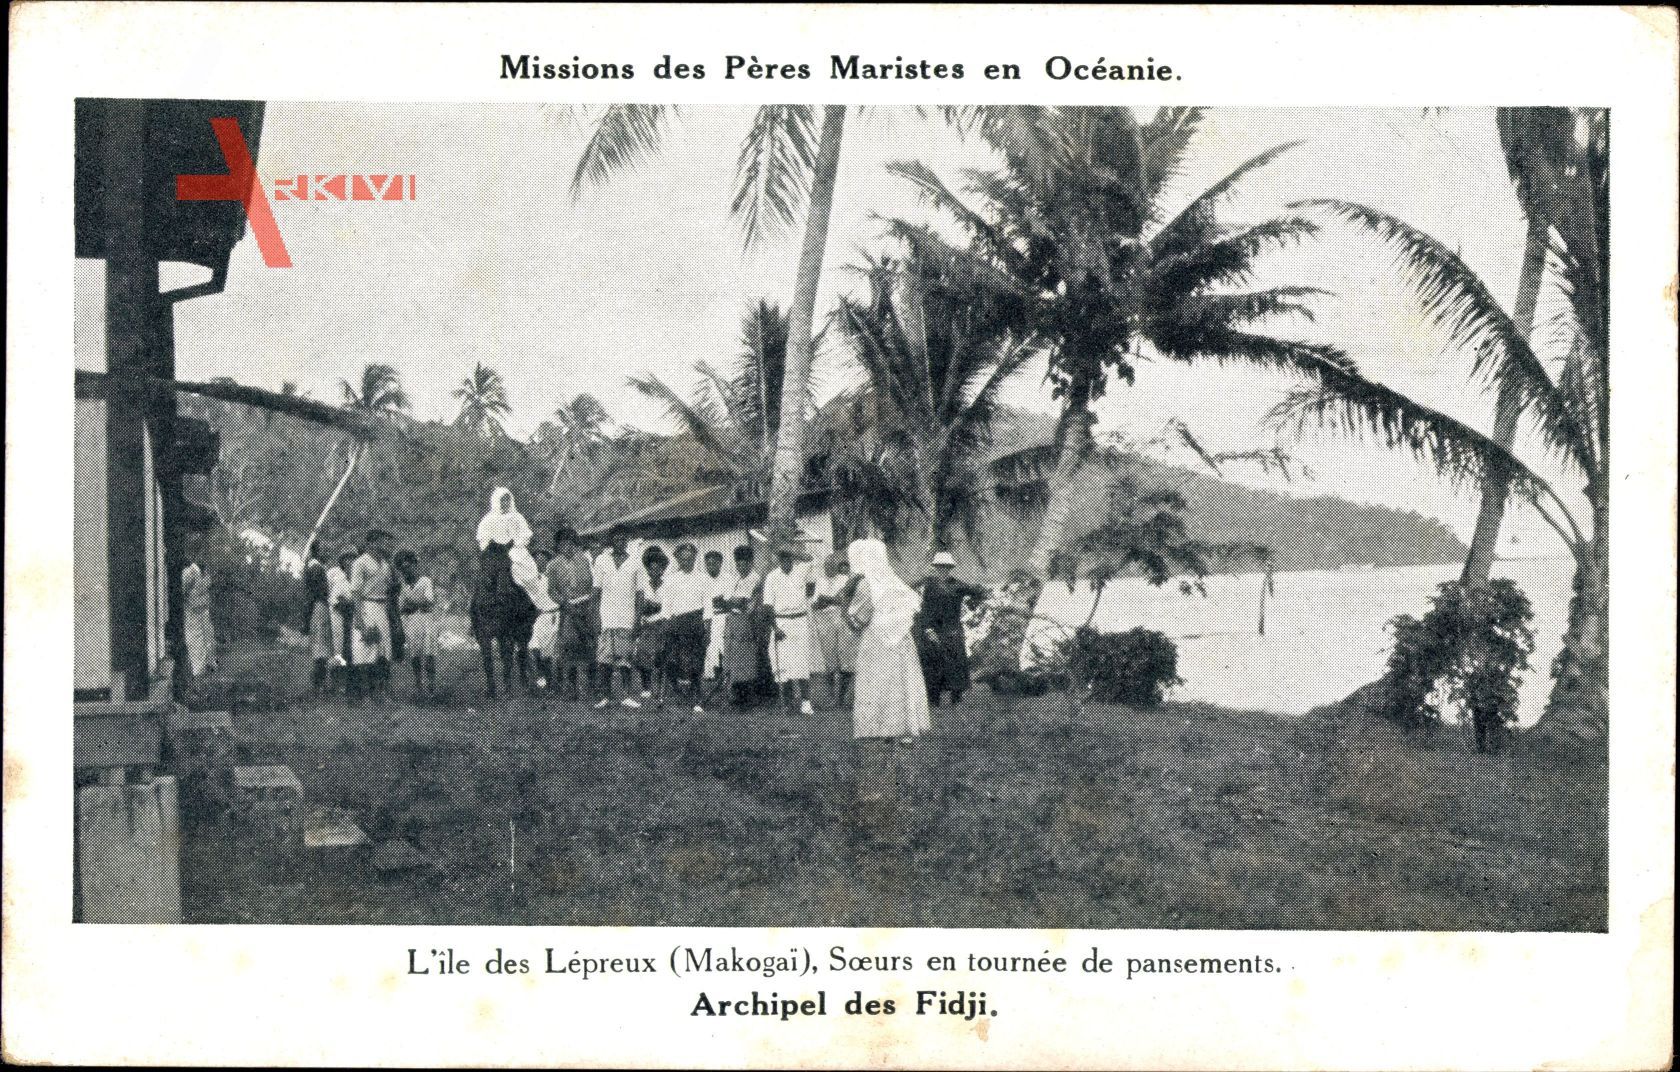 Fidschi, Archipel, Missions des Pères Maristes, Lépreux Makogai, Soeurs